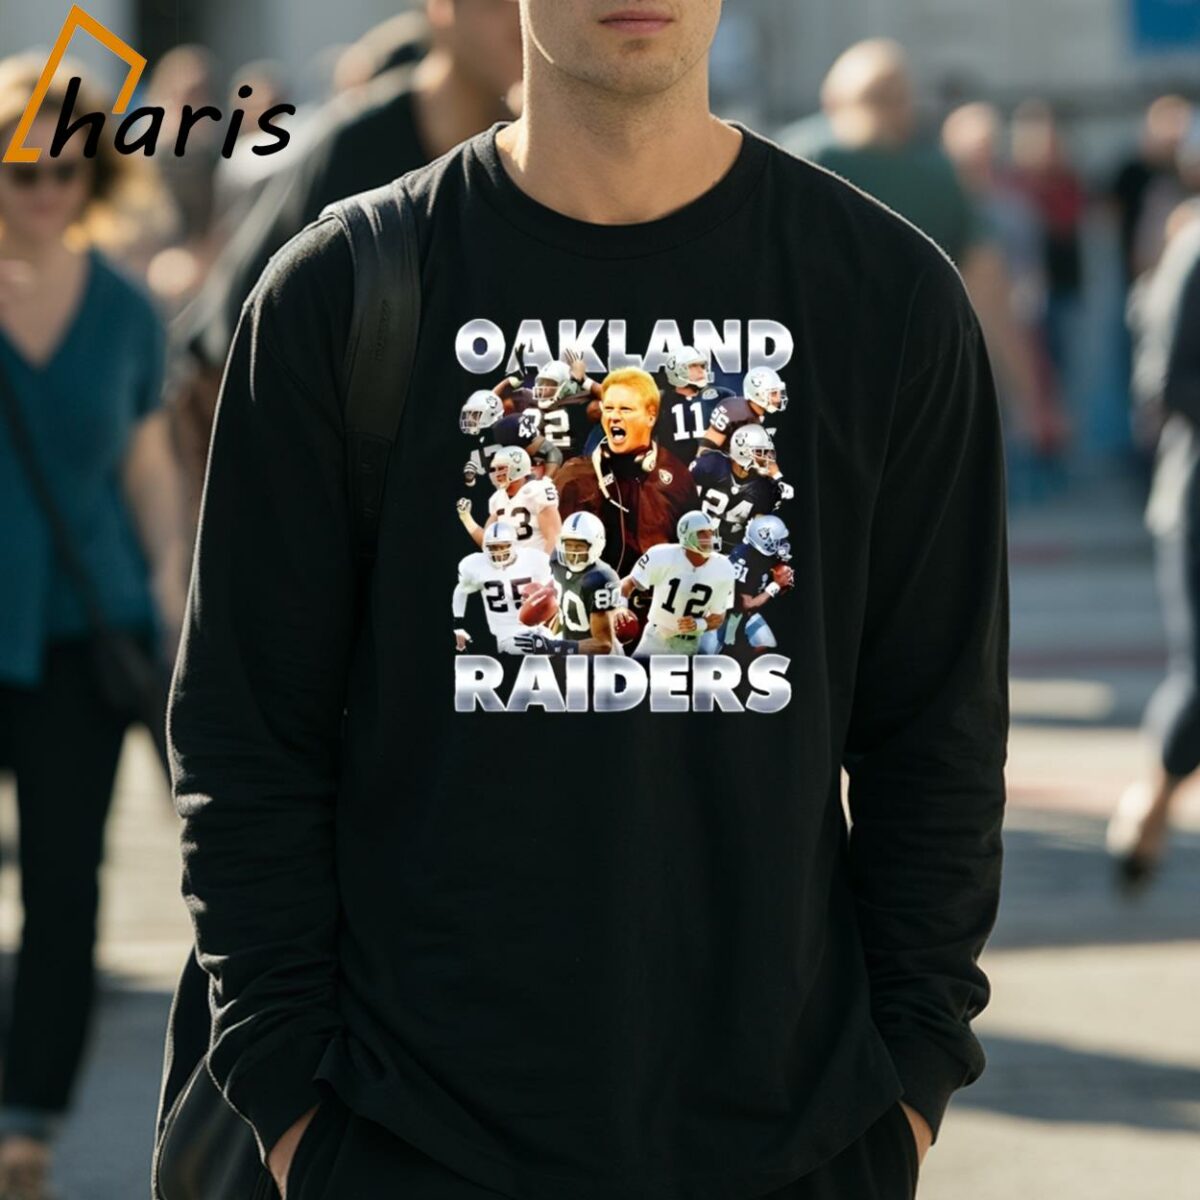 Las Vegas Raiders Football Team Oakland Raiders Graphic Shirt 3 Long Sleeve Shirt